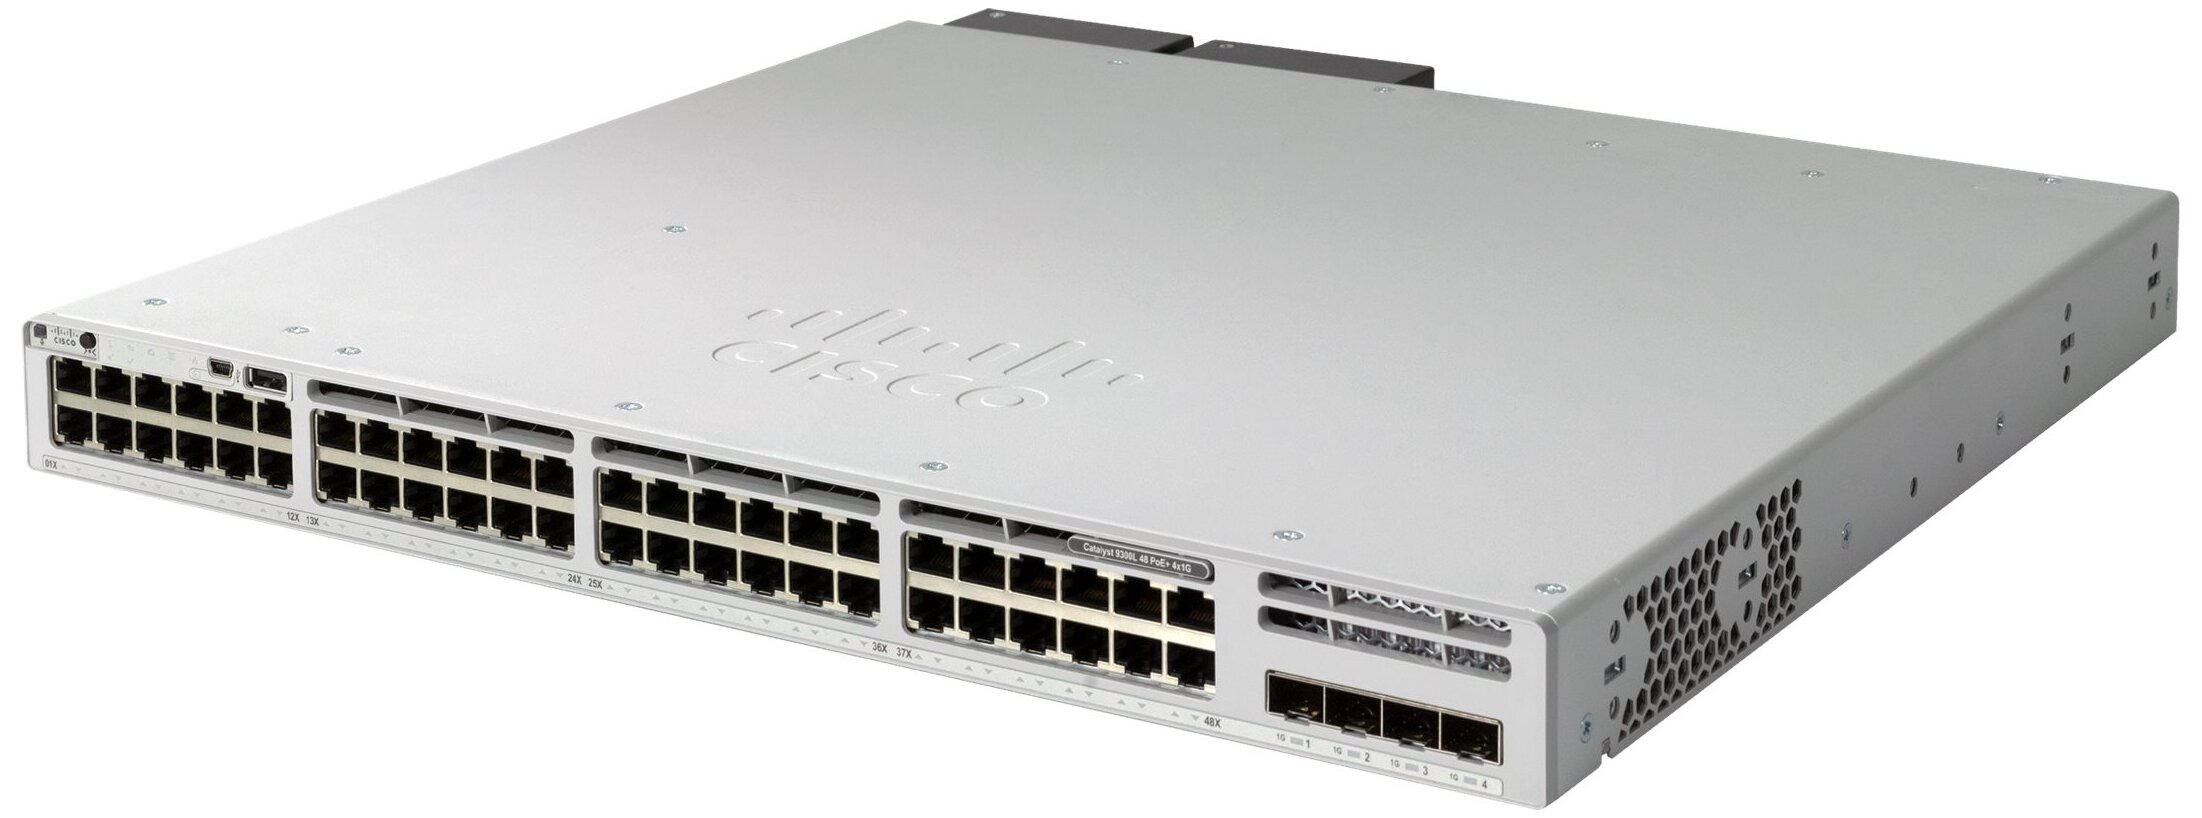 Коммутатор Cisco 9300 C9300L-48P-4G-E /PoE 505Вт./Управляемый Layer 3